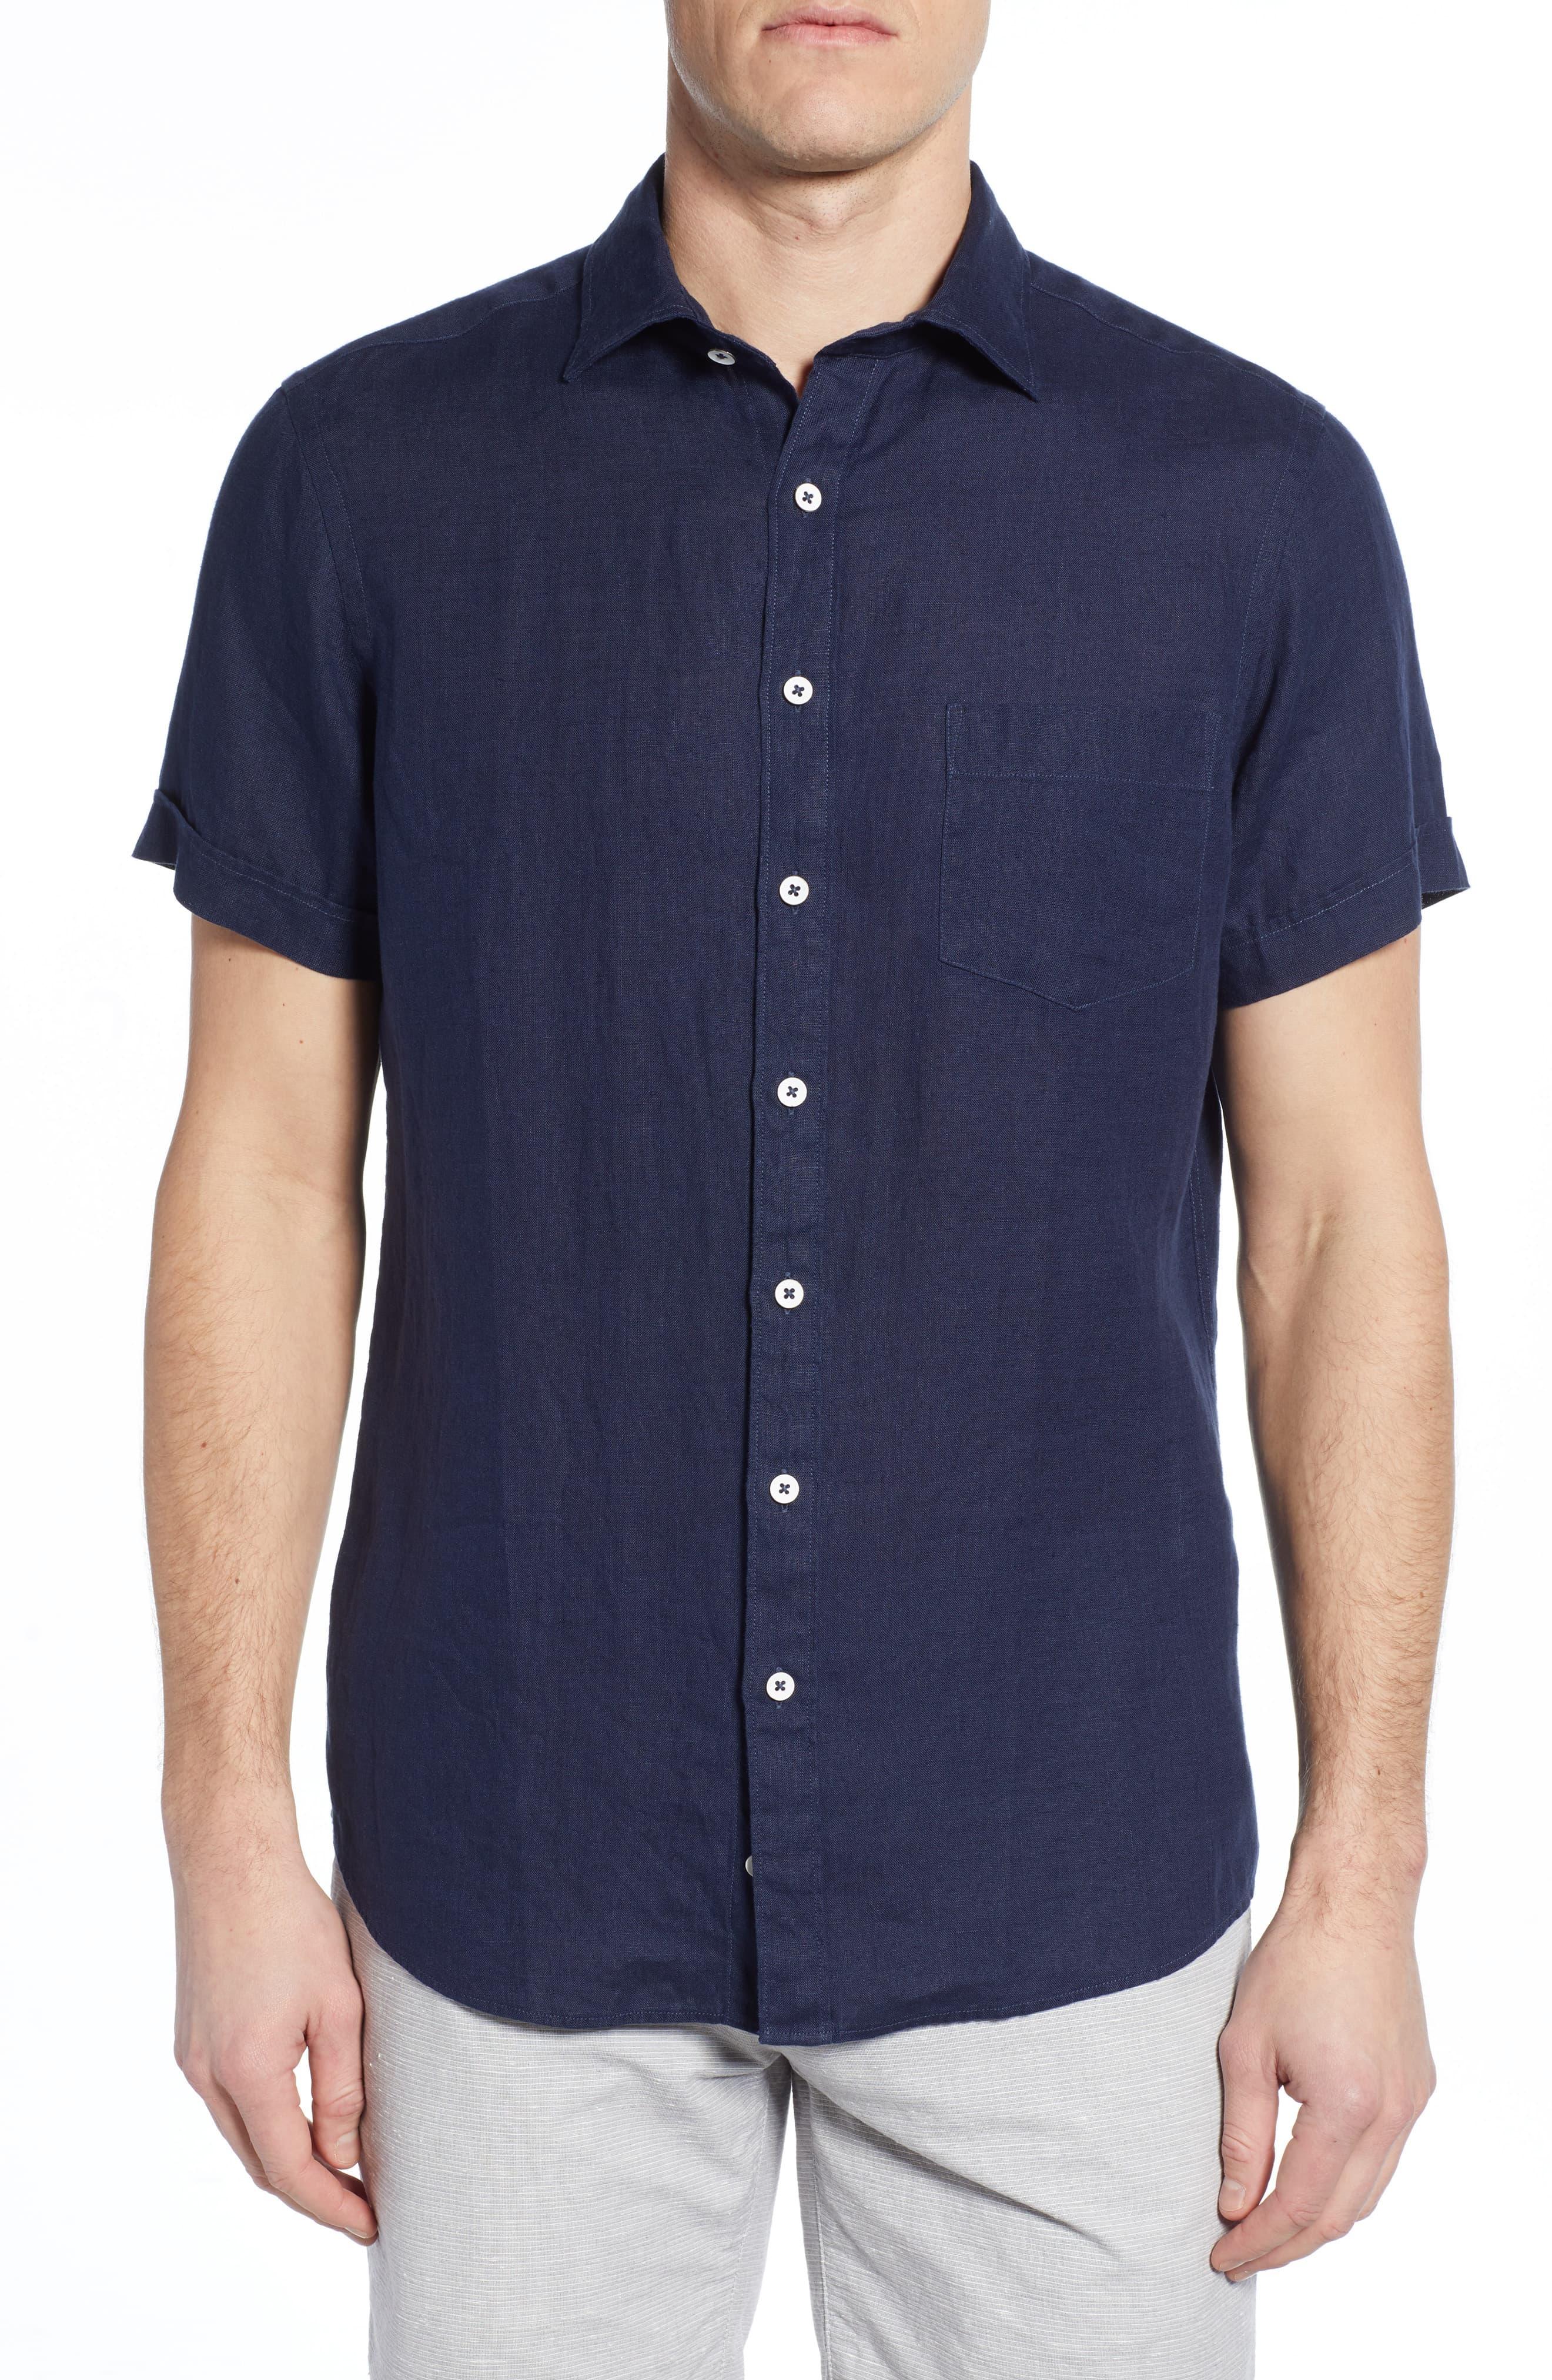 Rodd & Gunn Regular Fit Ellerslie Linen Shirt in Blue for Men - Lyst